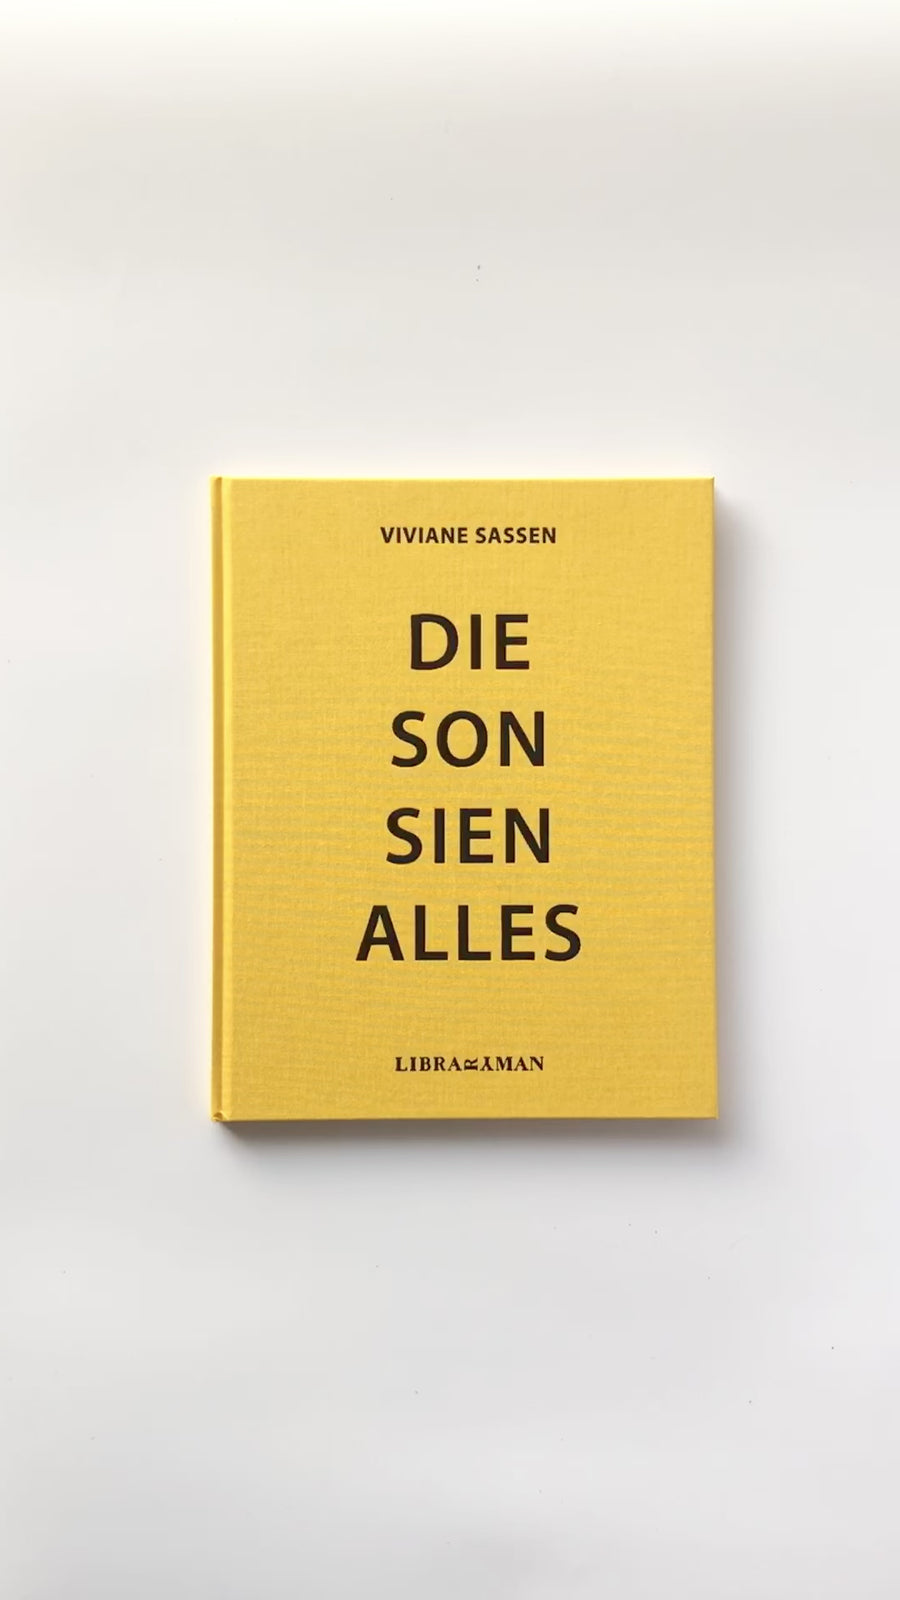 (First Edition) Die Son Sien Alles by Viviane Sassen